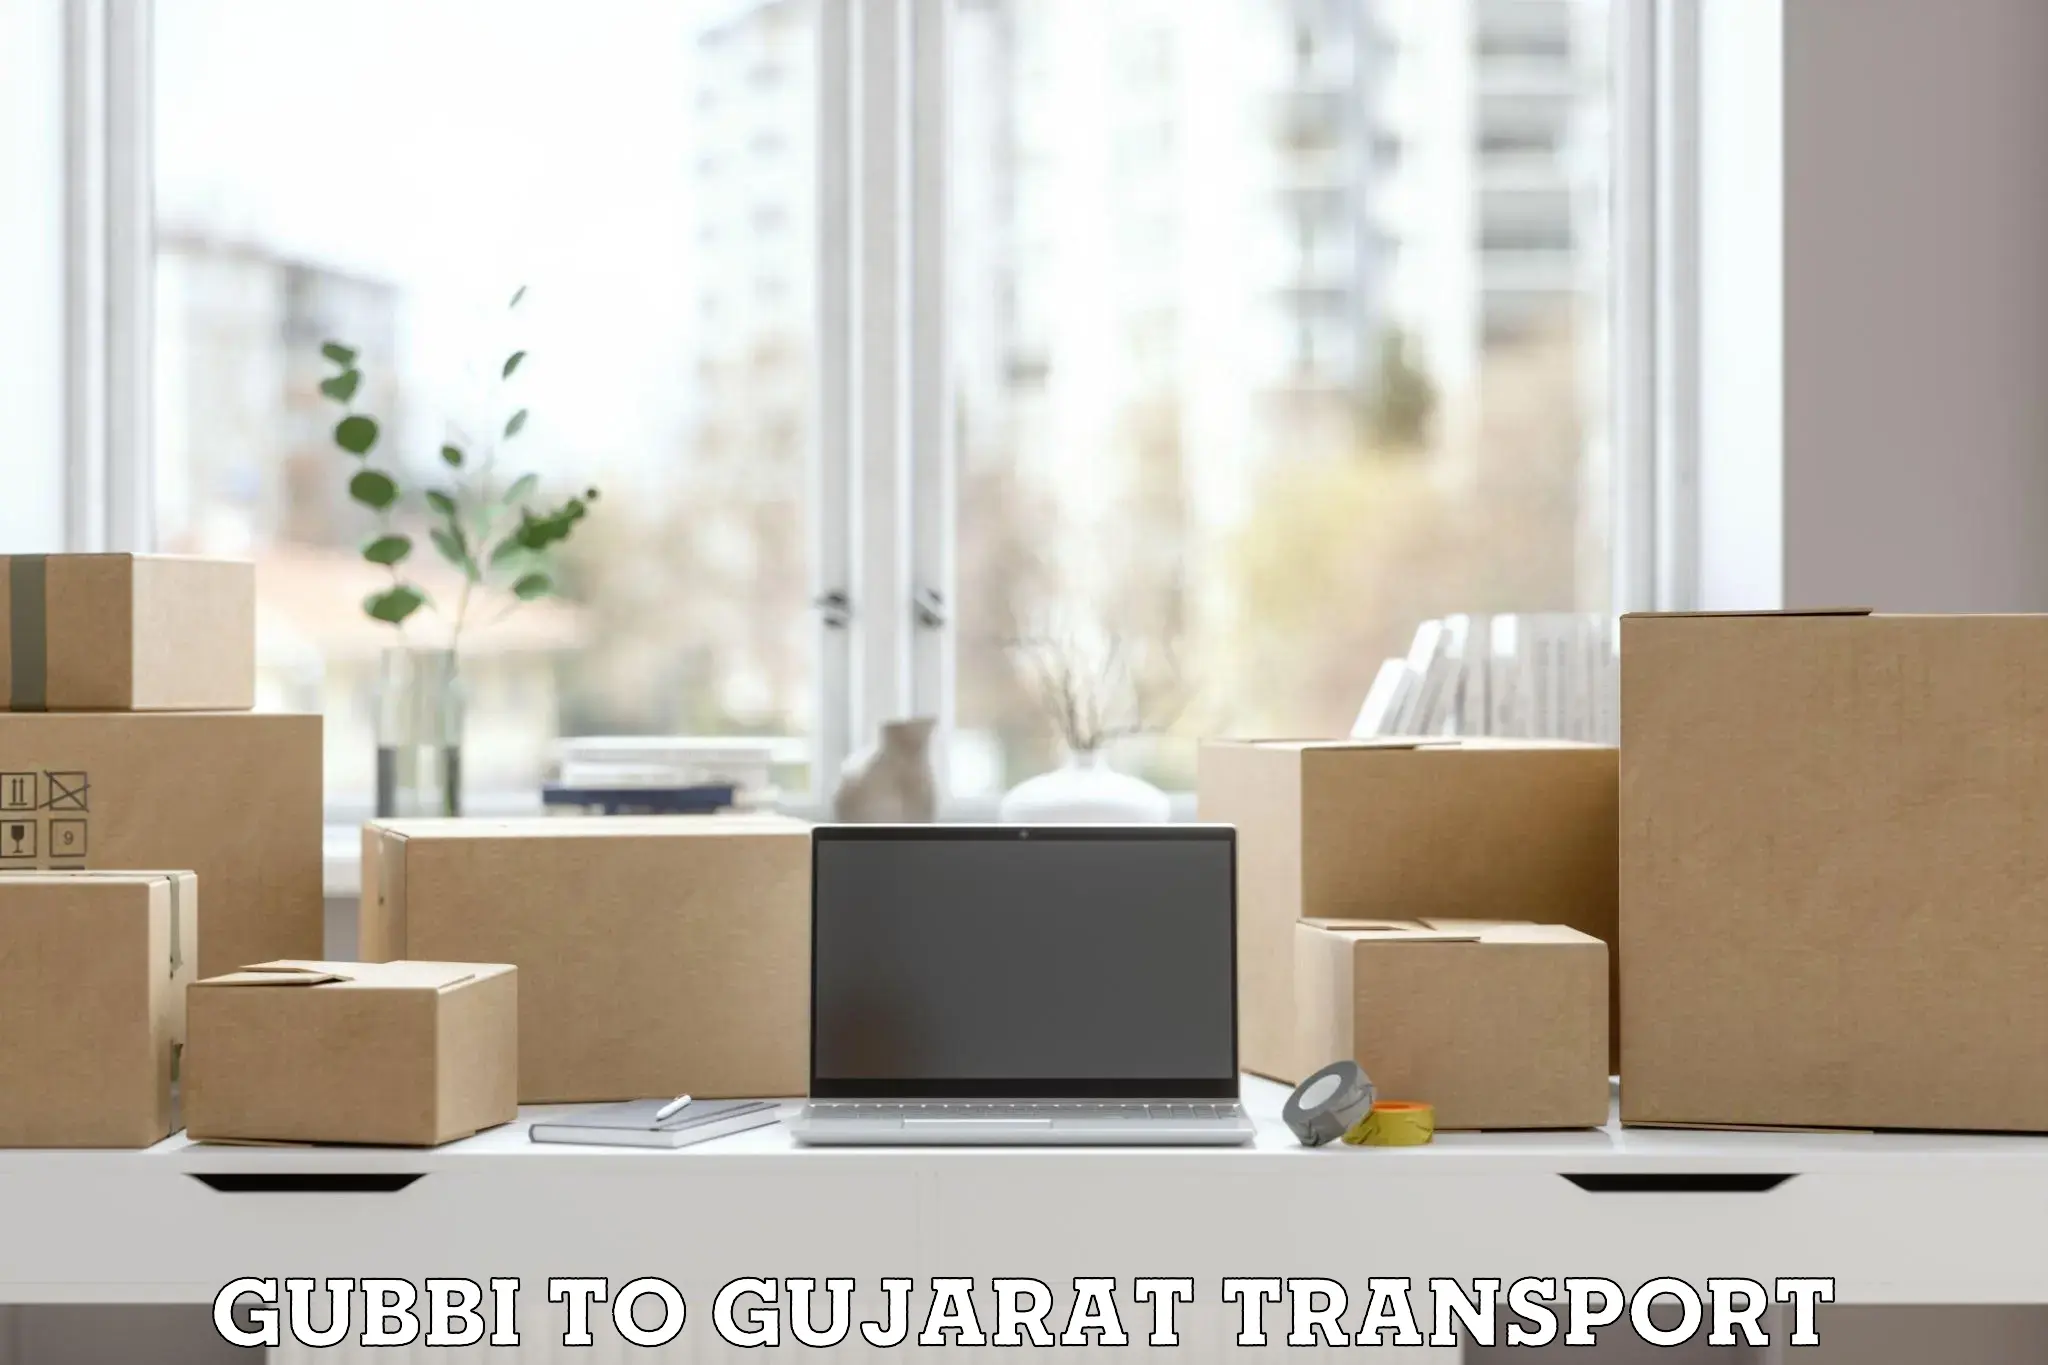 Vehicle parcel service Gubbi to Dabhoi